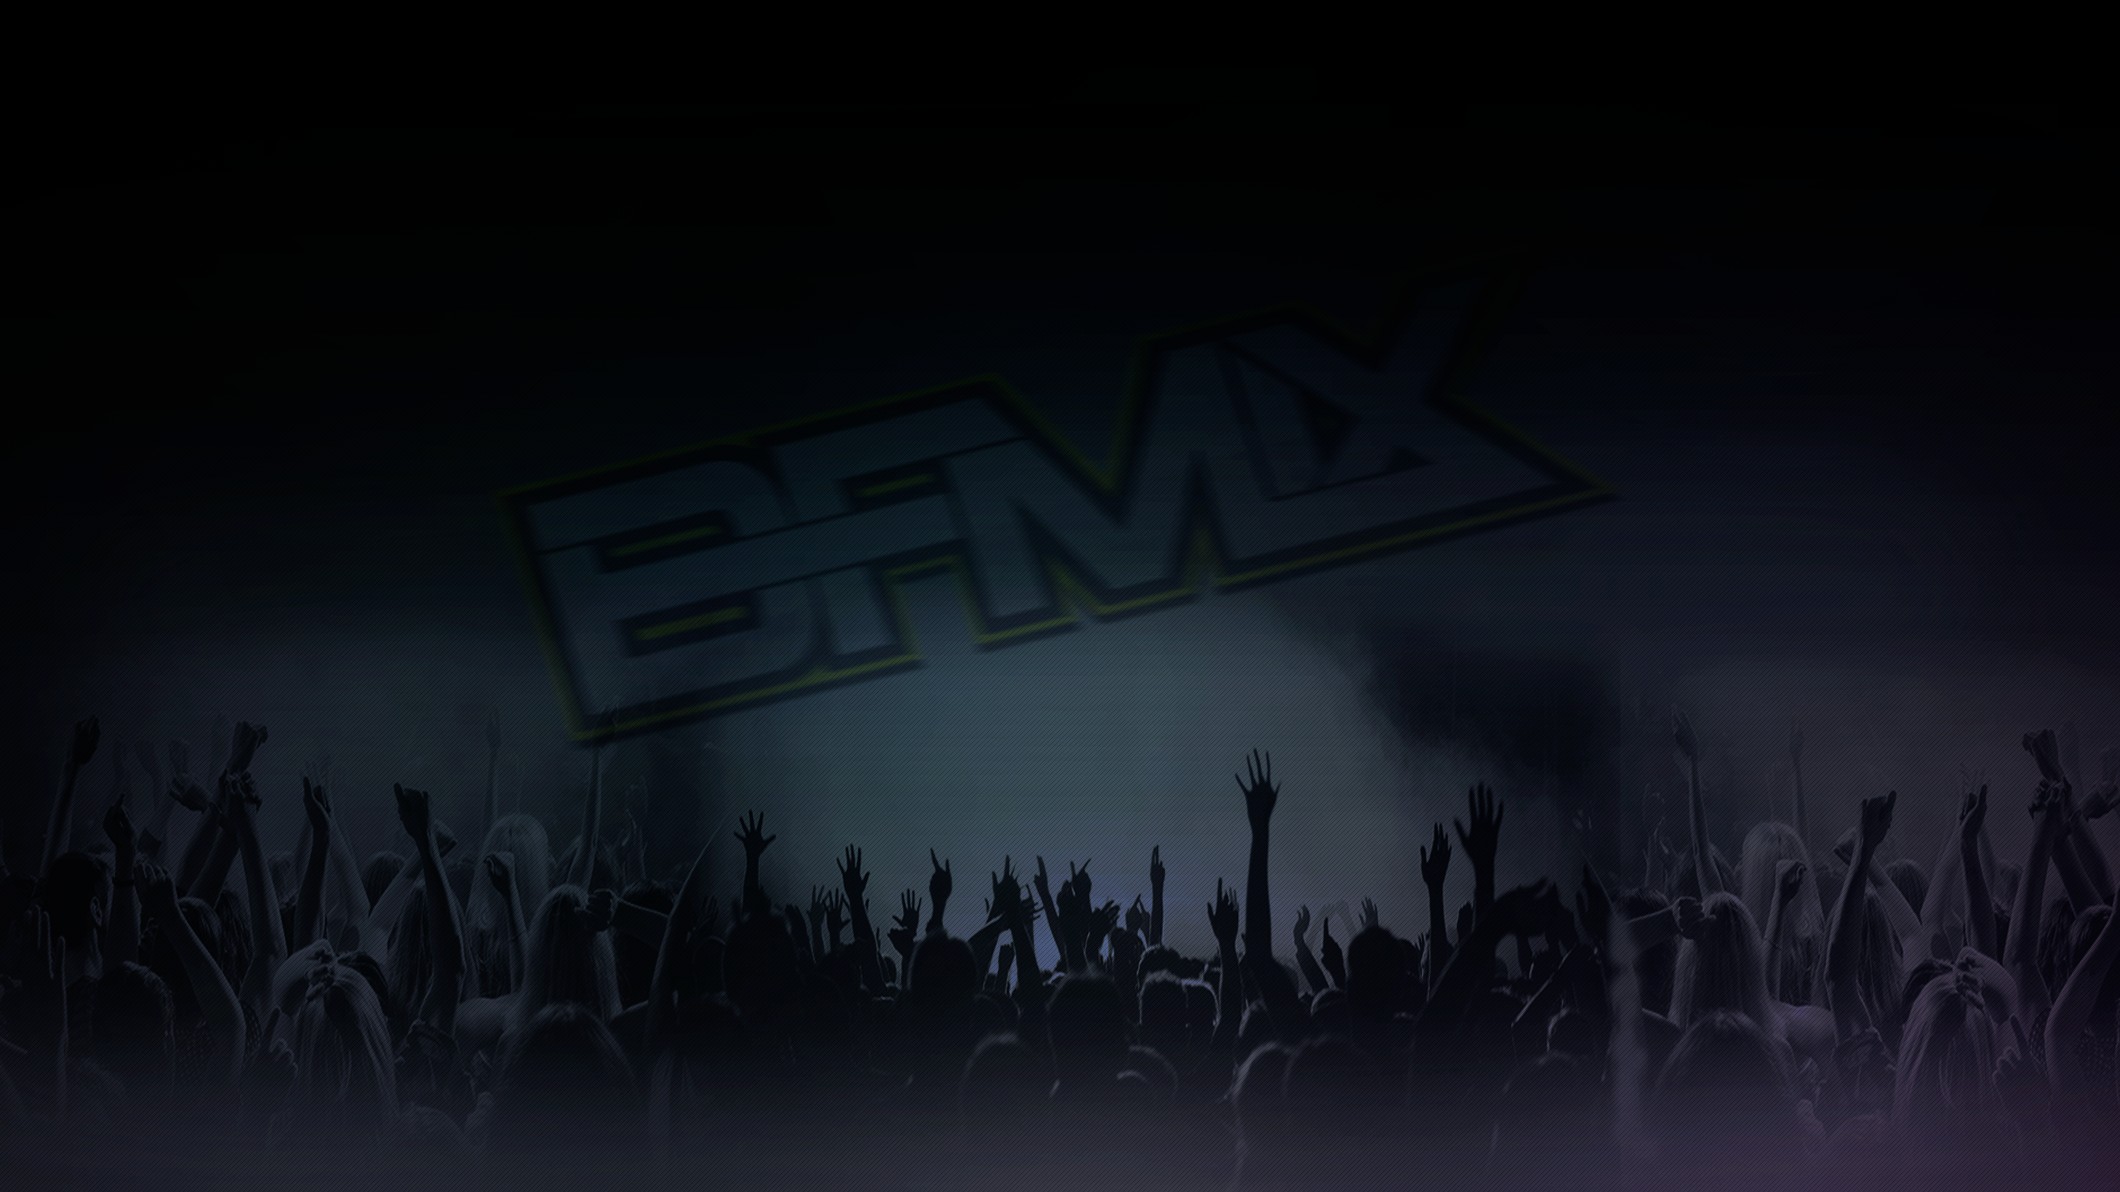 DJ, BFMIX, EDM, Music Wallpaper